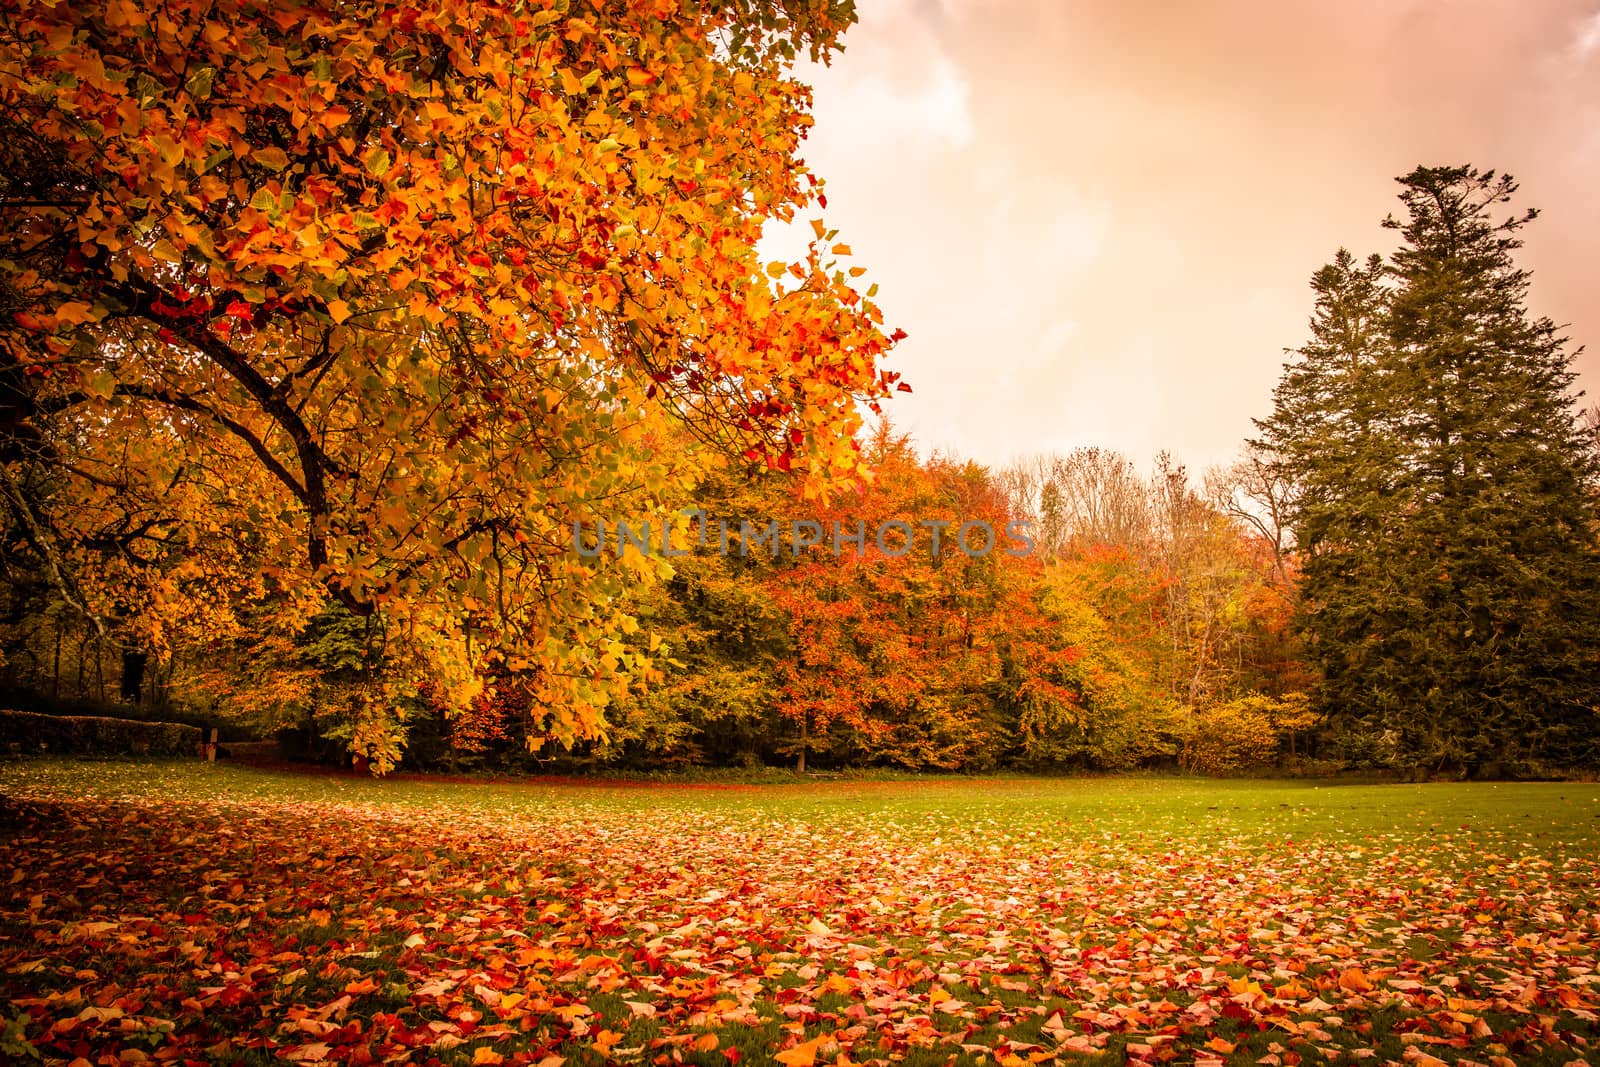 Autumn landscape by Sportactive